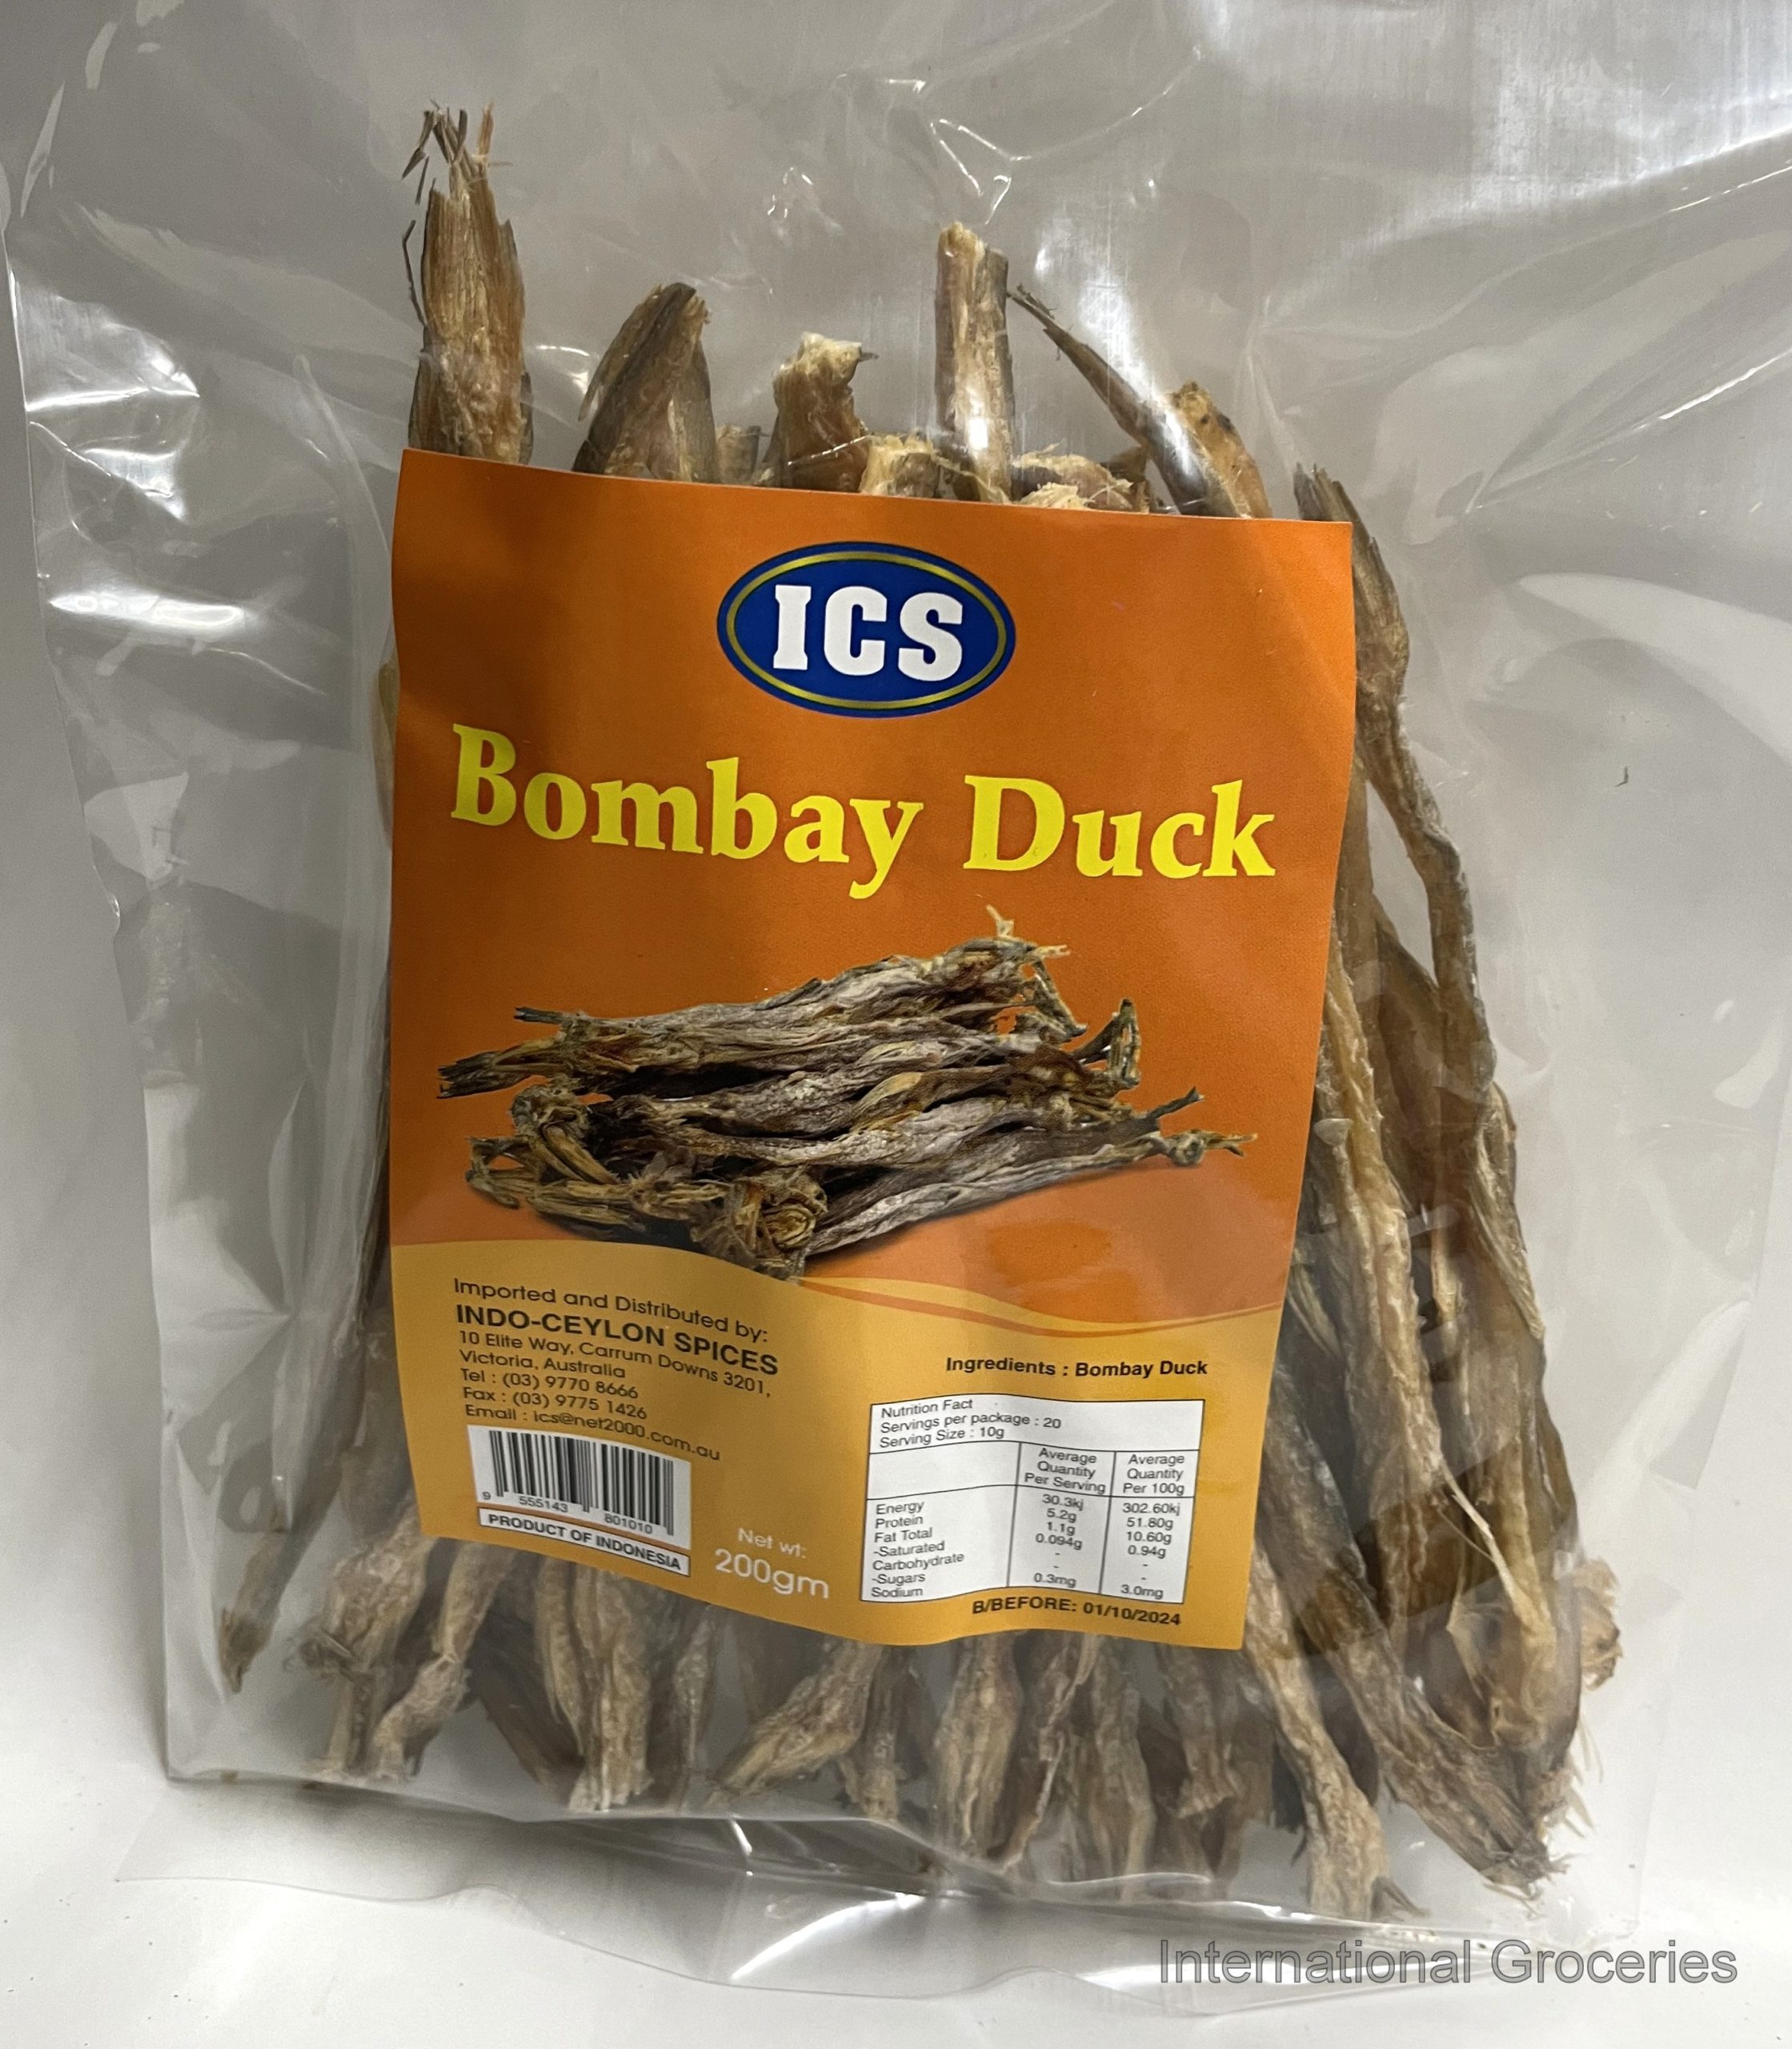 Bombay duck